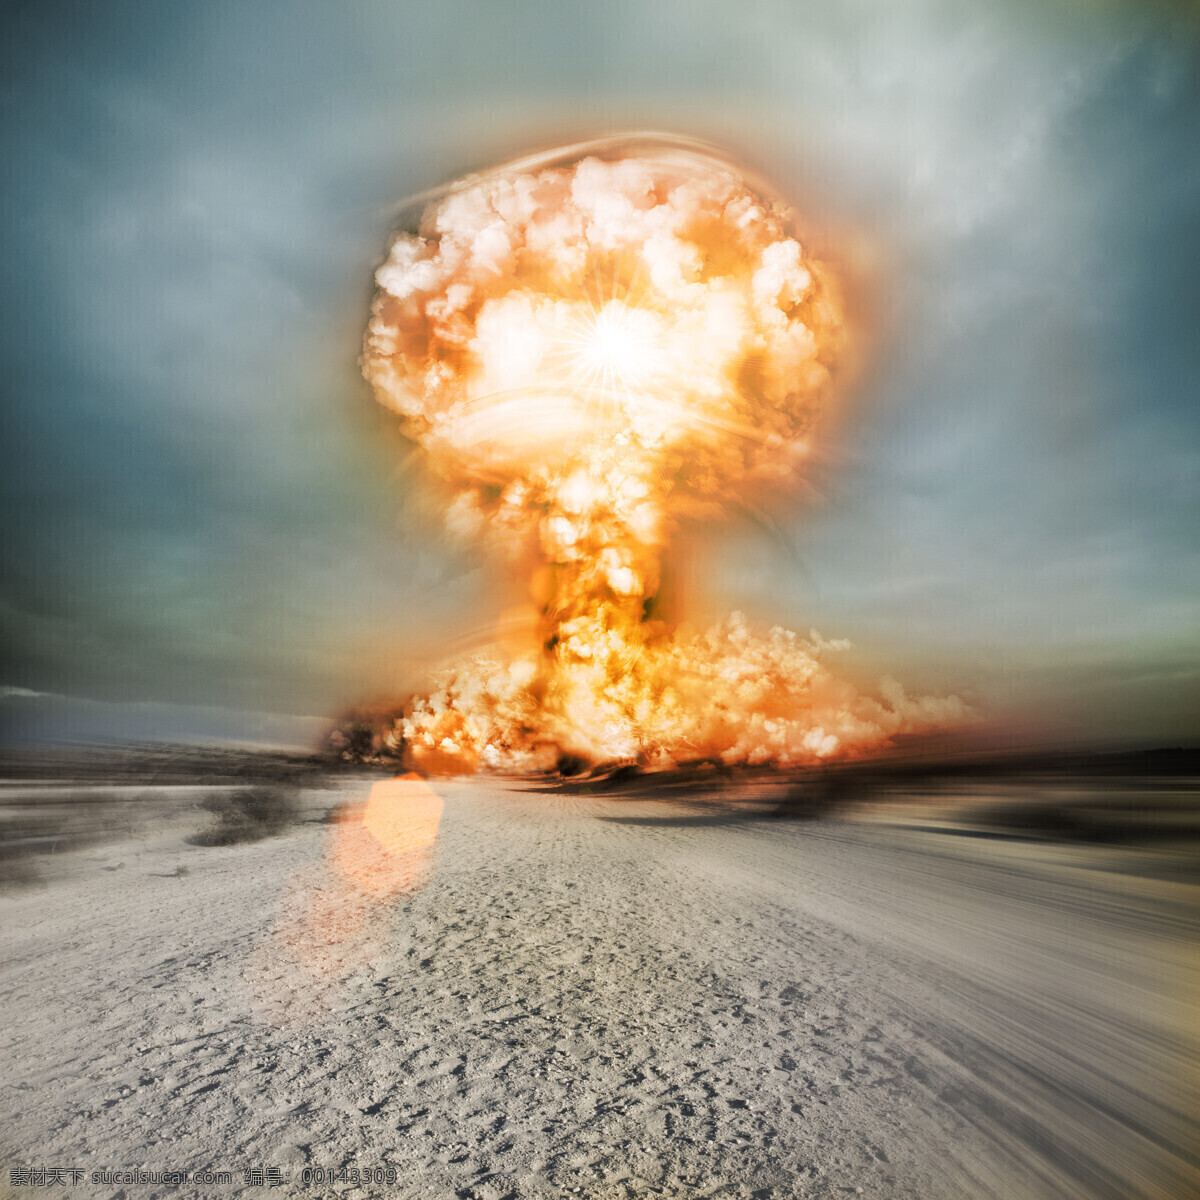 原子弹爆炸 炮弹 蘑菇云 核弹爆炸 核武器 冰水烈火 生活百科 灰色